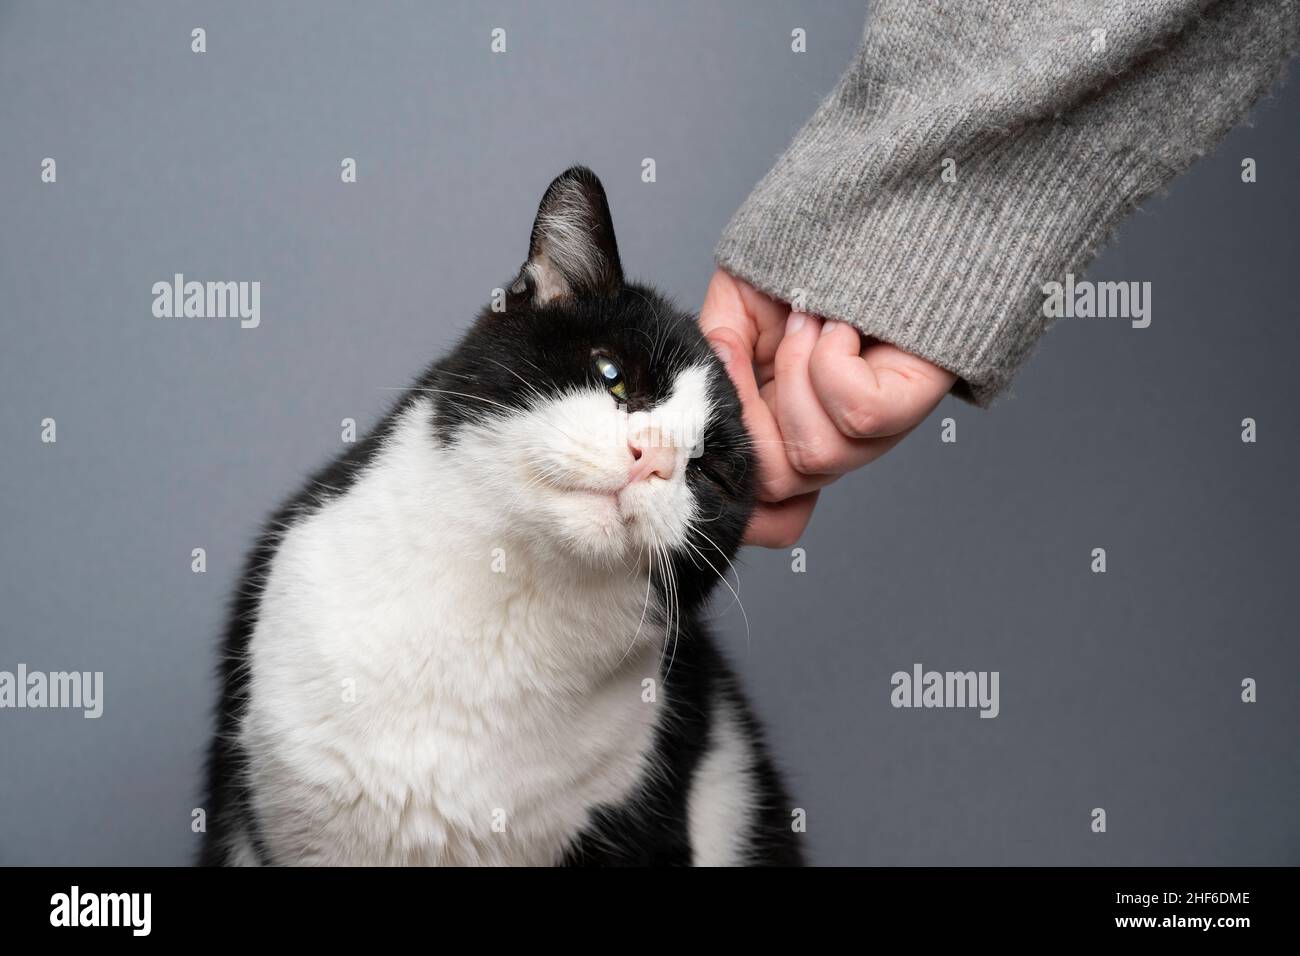 nero e bianco handicappato salvato gatto essere stroked da mano umana su sfondo grigio Foto Stock